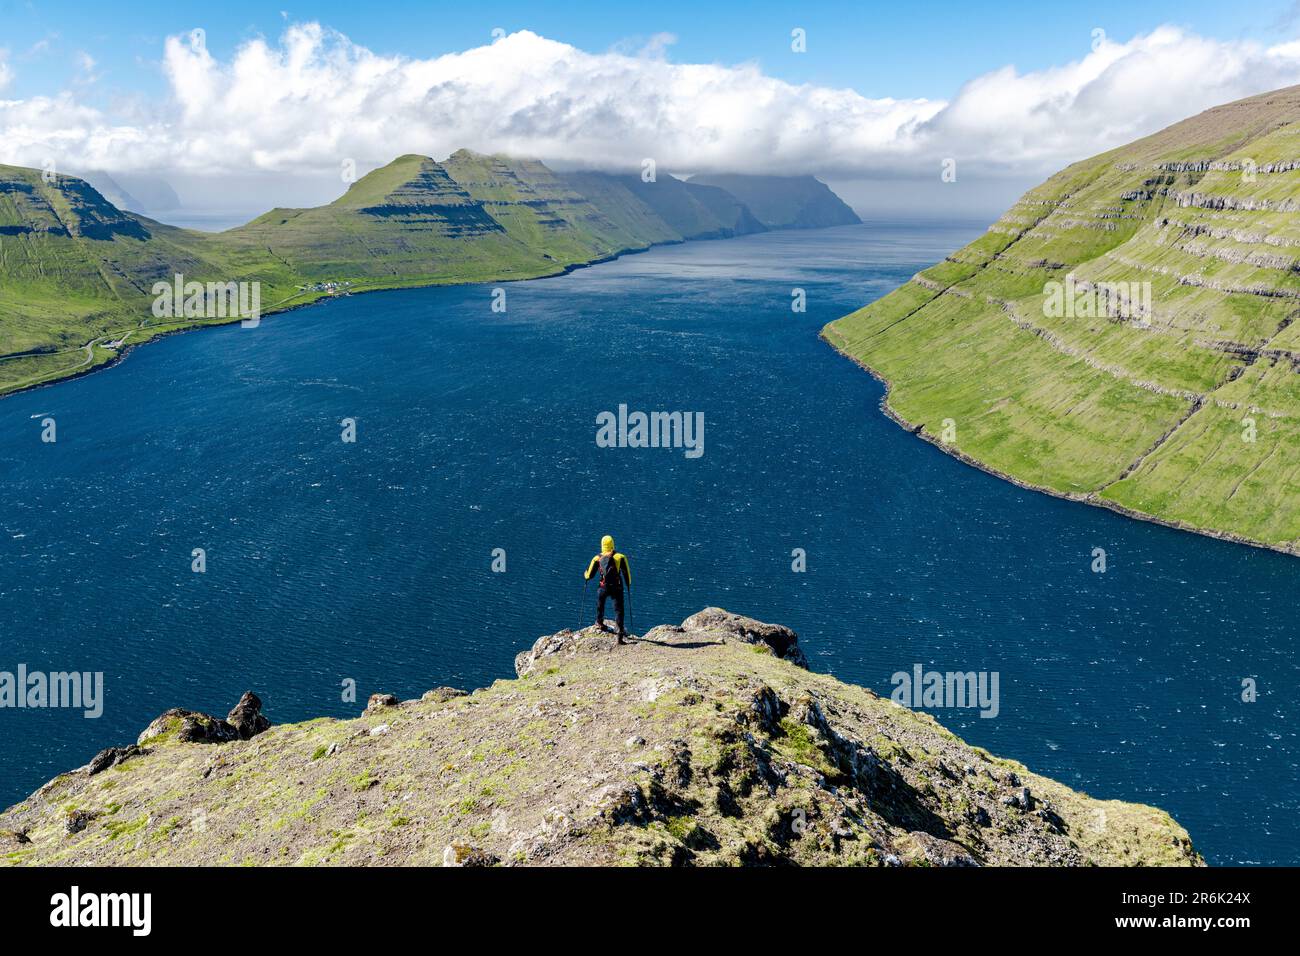 Vista dall'alto dell'escursionista che ammira le montagne e l'oceano in cima a una montagna, Kraksvik, Bordoy Island, Faroe Islands, Danimarca, Europa Foto Stock